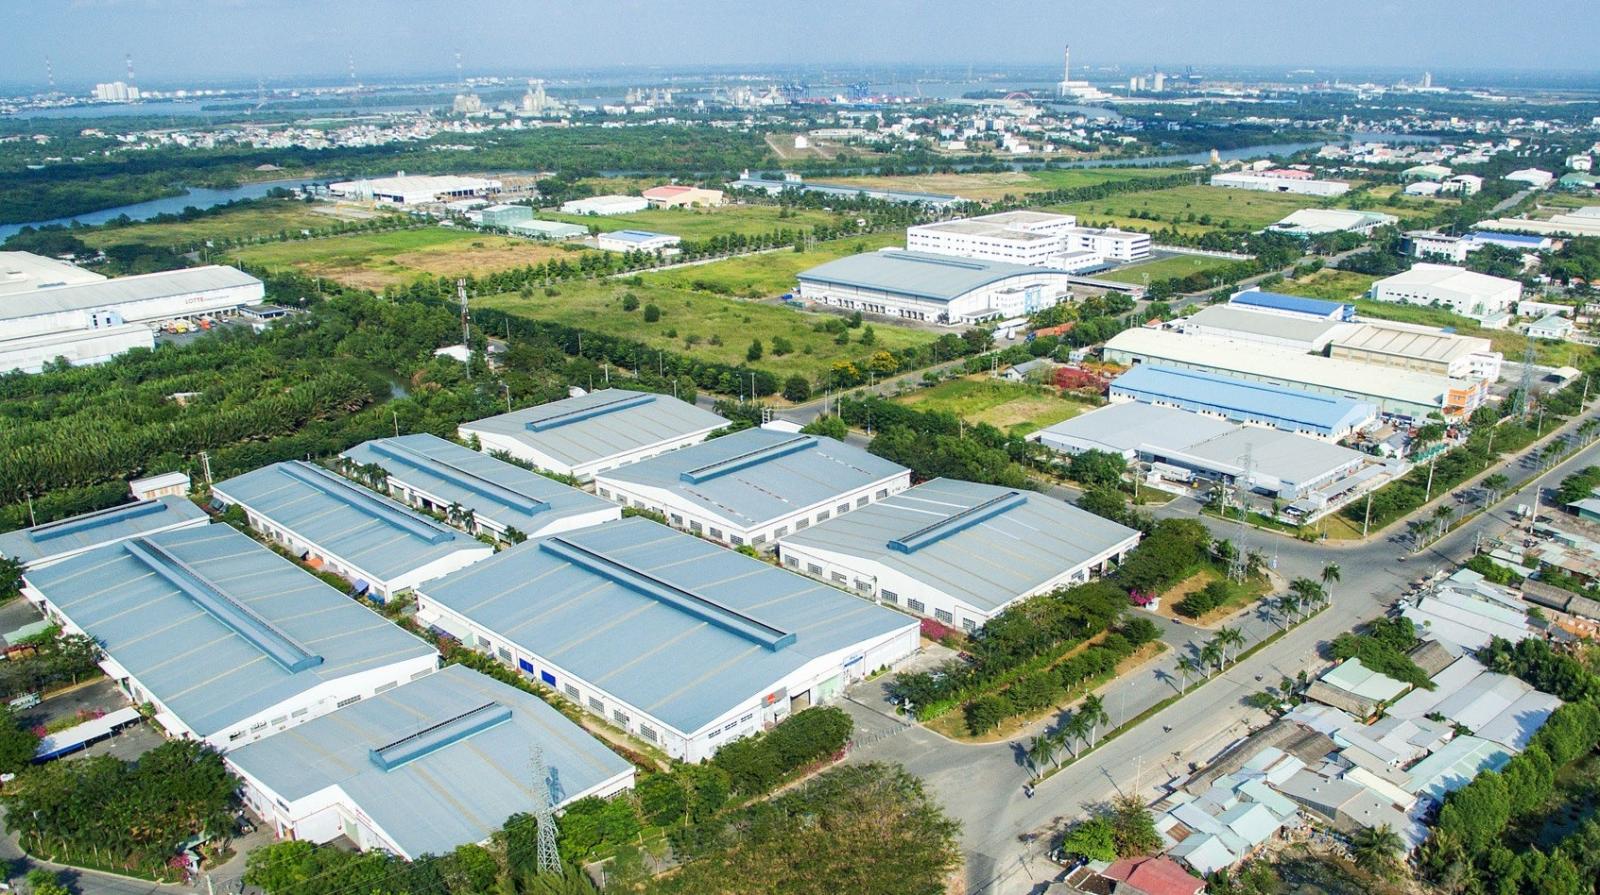 Lâm Đồng bổ sung khu công nghiệp 246ha vào quy hoạch